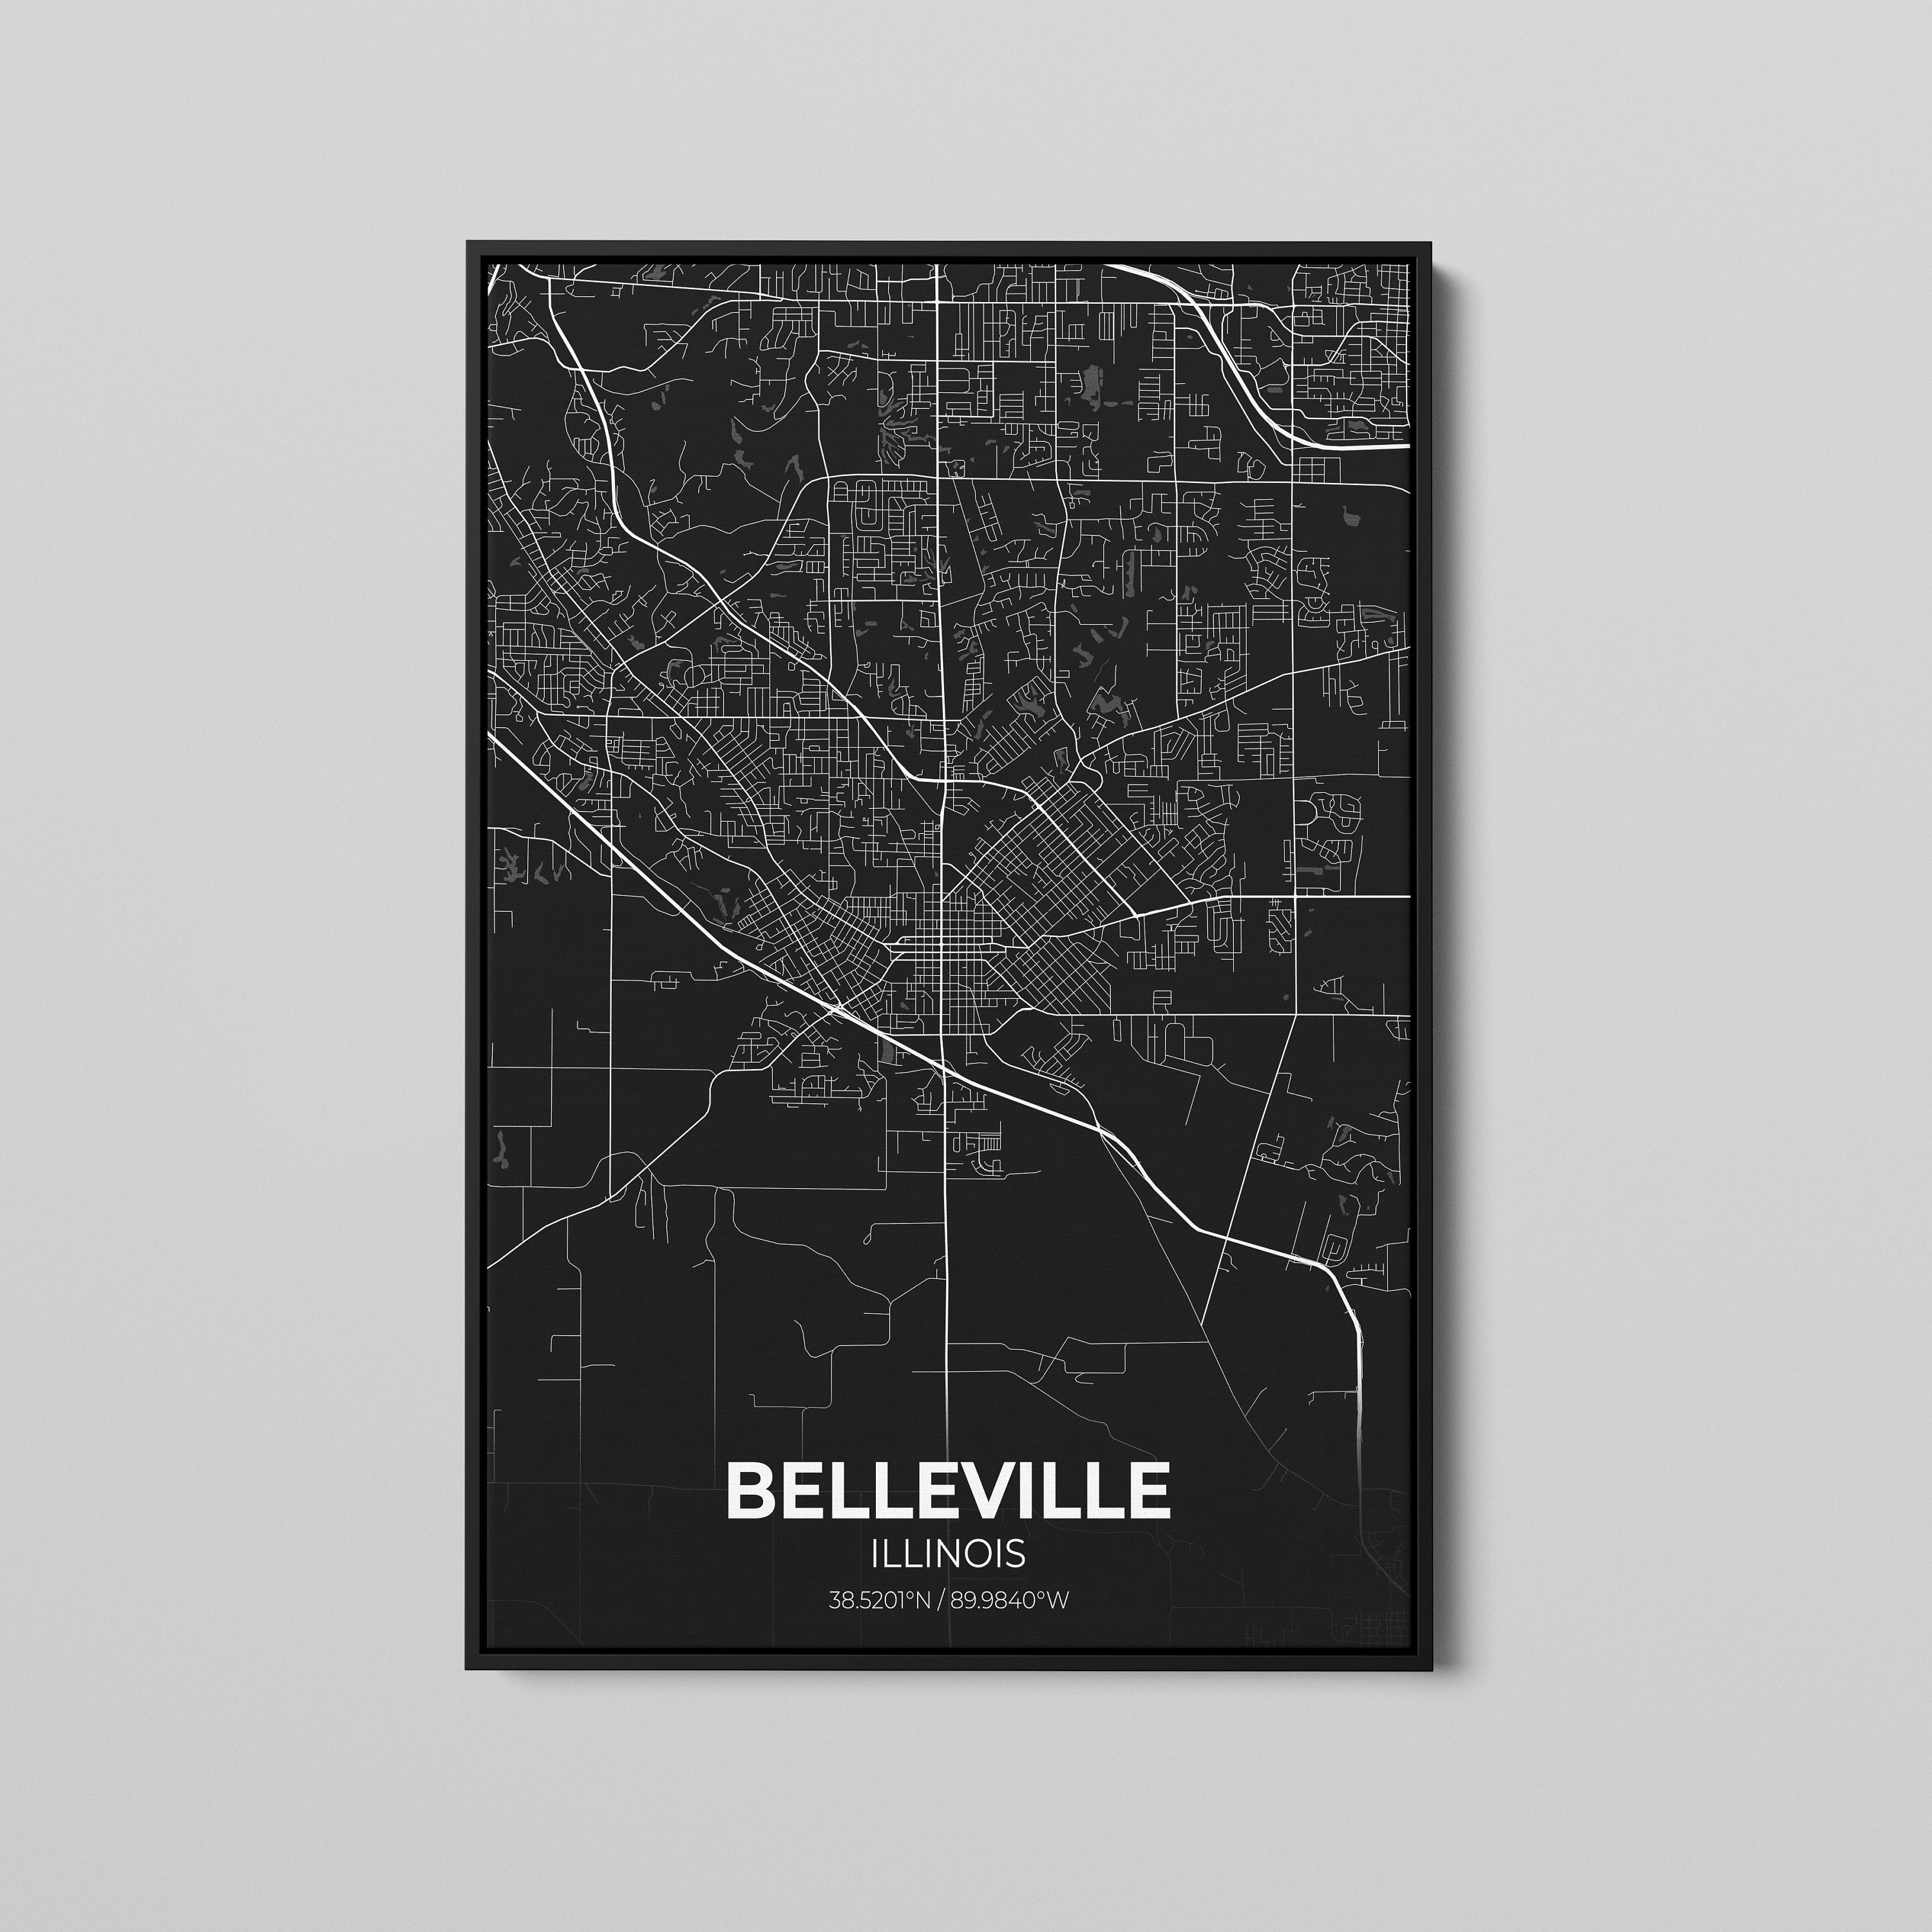 Belleville Illinois